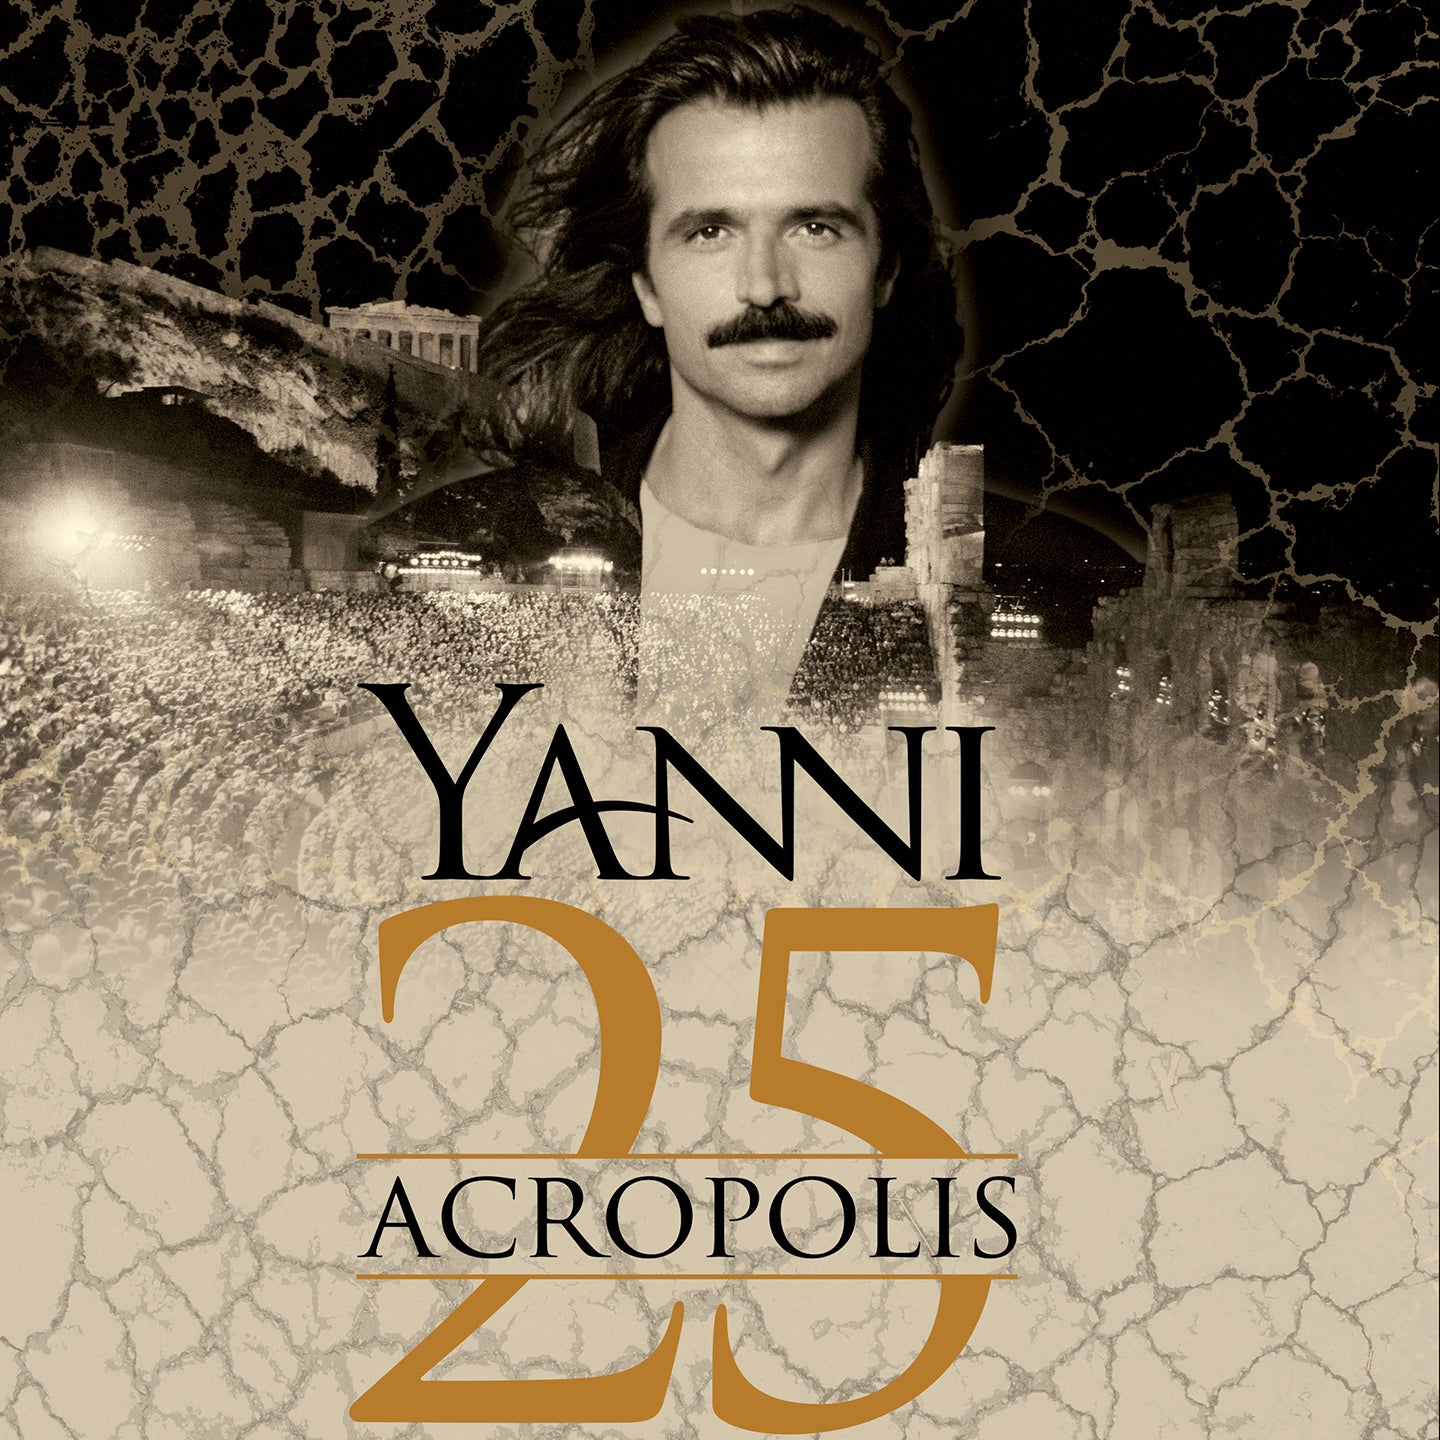 Yanni 25 Acropolis Anniversary Concert Tour